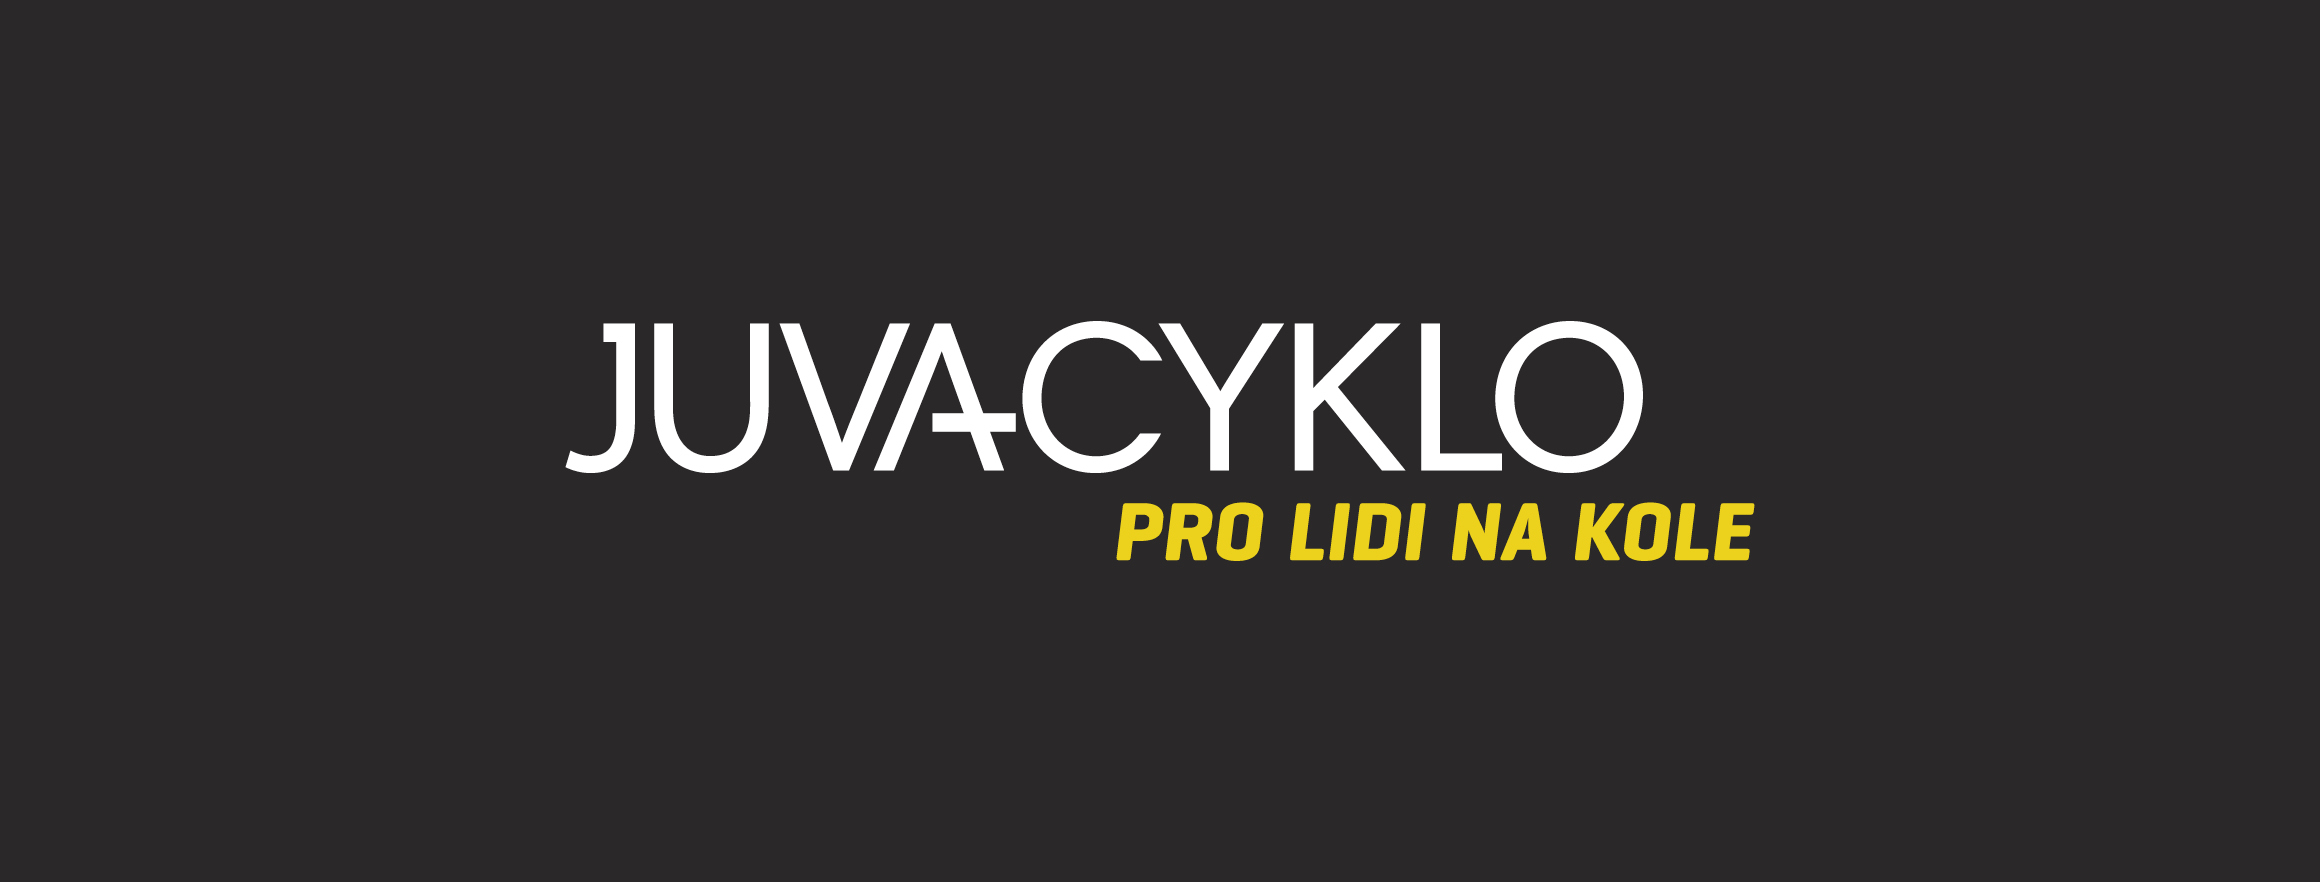 Logo JUVACYKLO